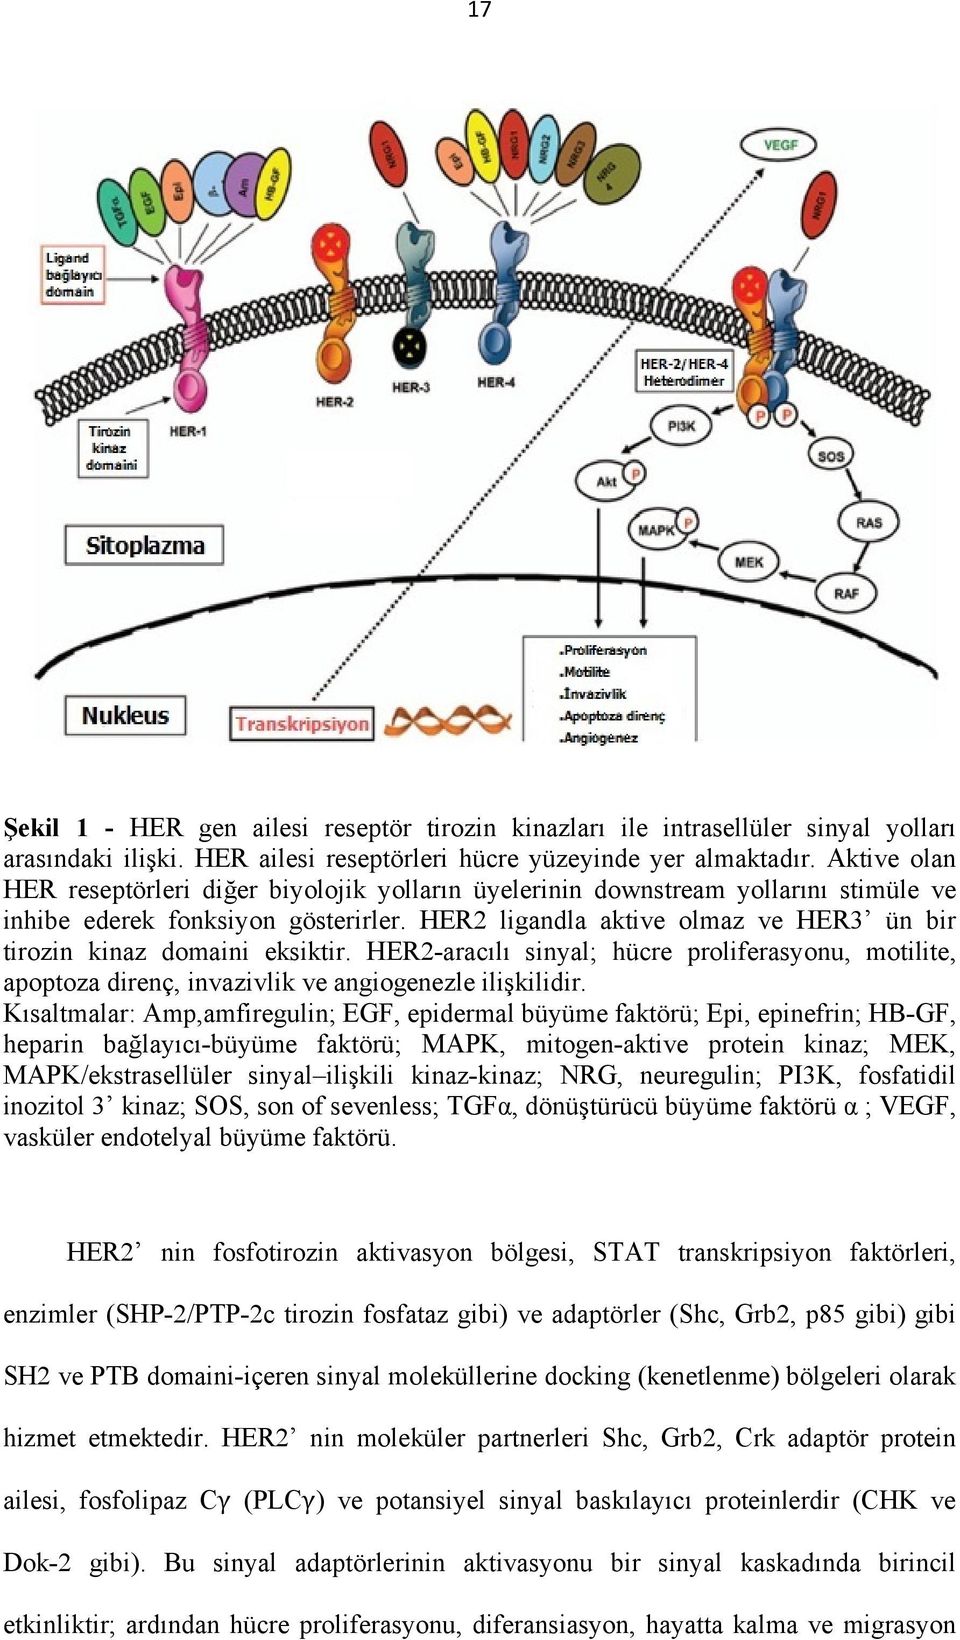 HER2 ligandla aktive olmaz ve HER3 ün bir tirozin kinaz domaini eksiktir. HER2-aracılı sinyal; hücre proliferasyonu, motilite, apoptoza direnç, invazivlik ve angiogenezle ilişkilidir.